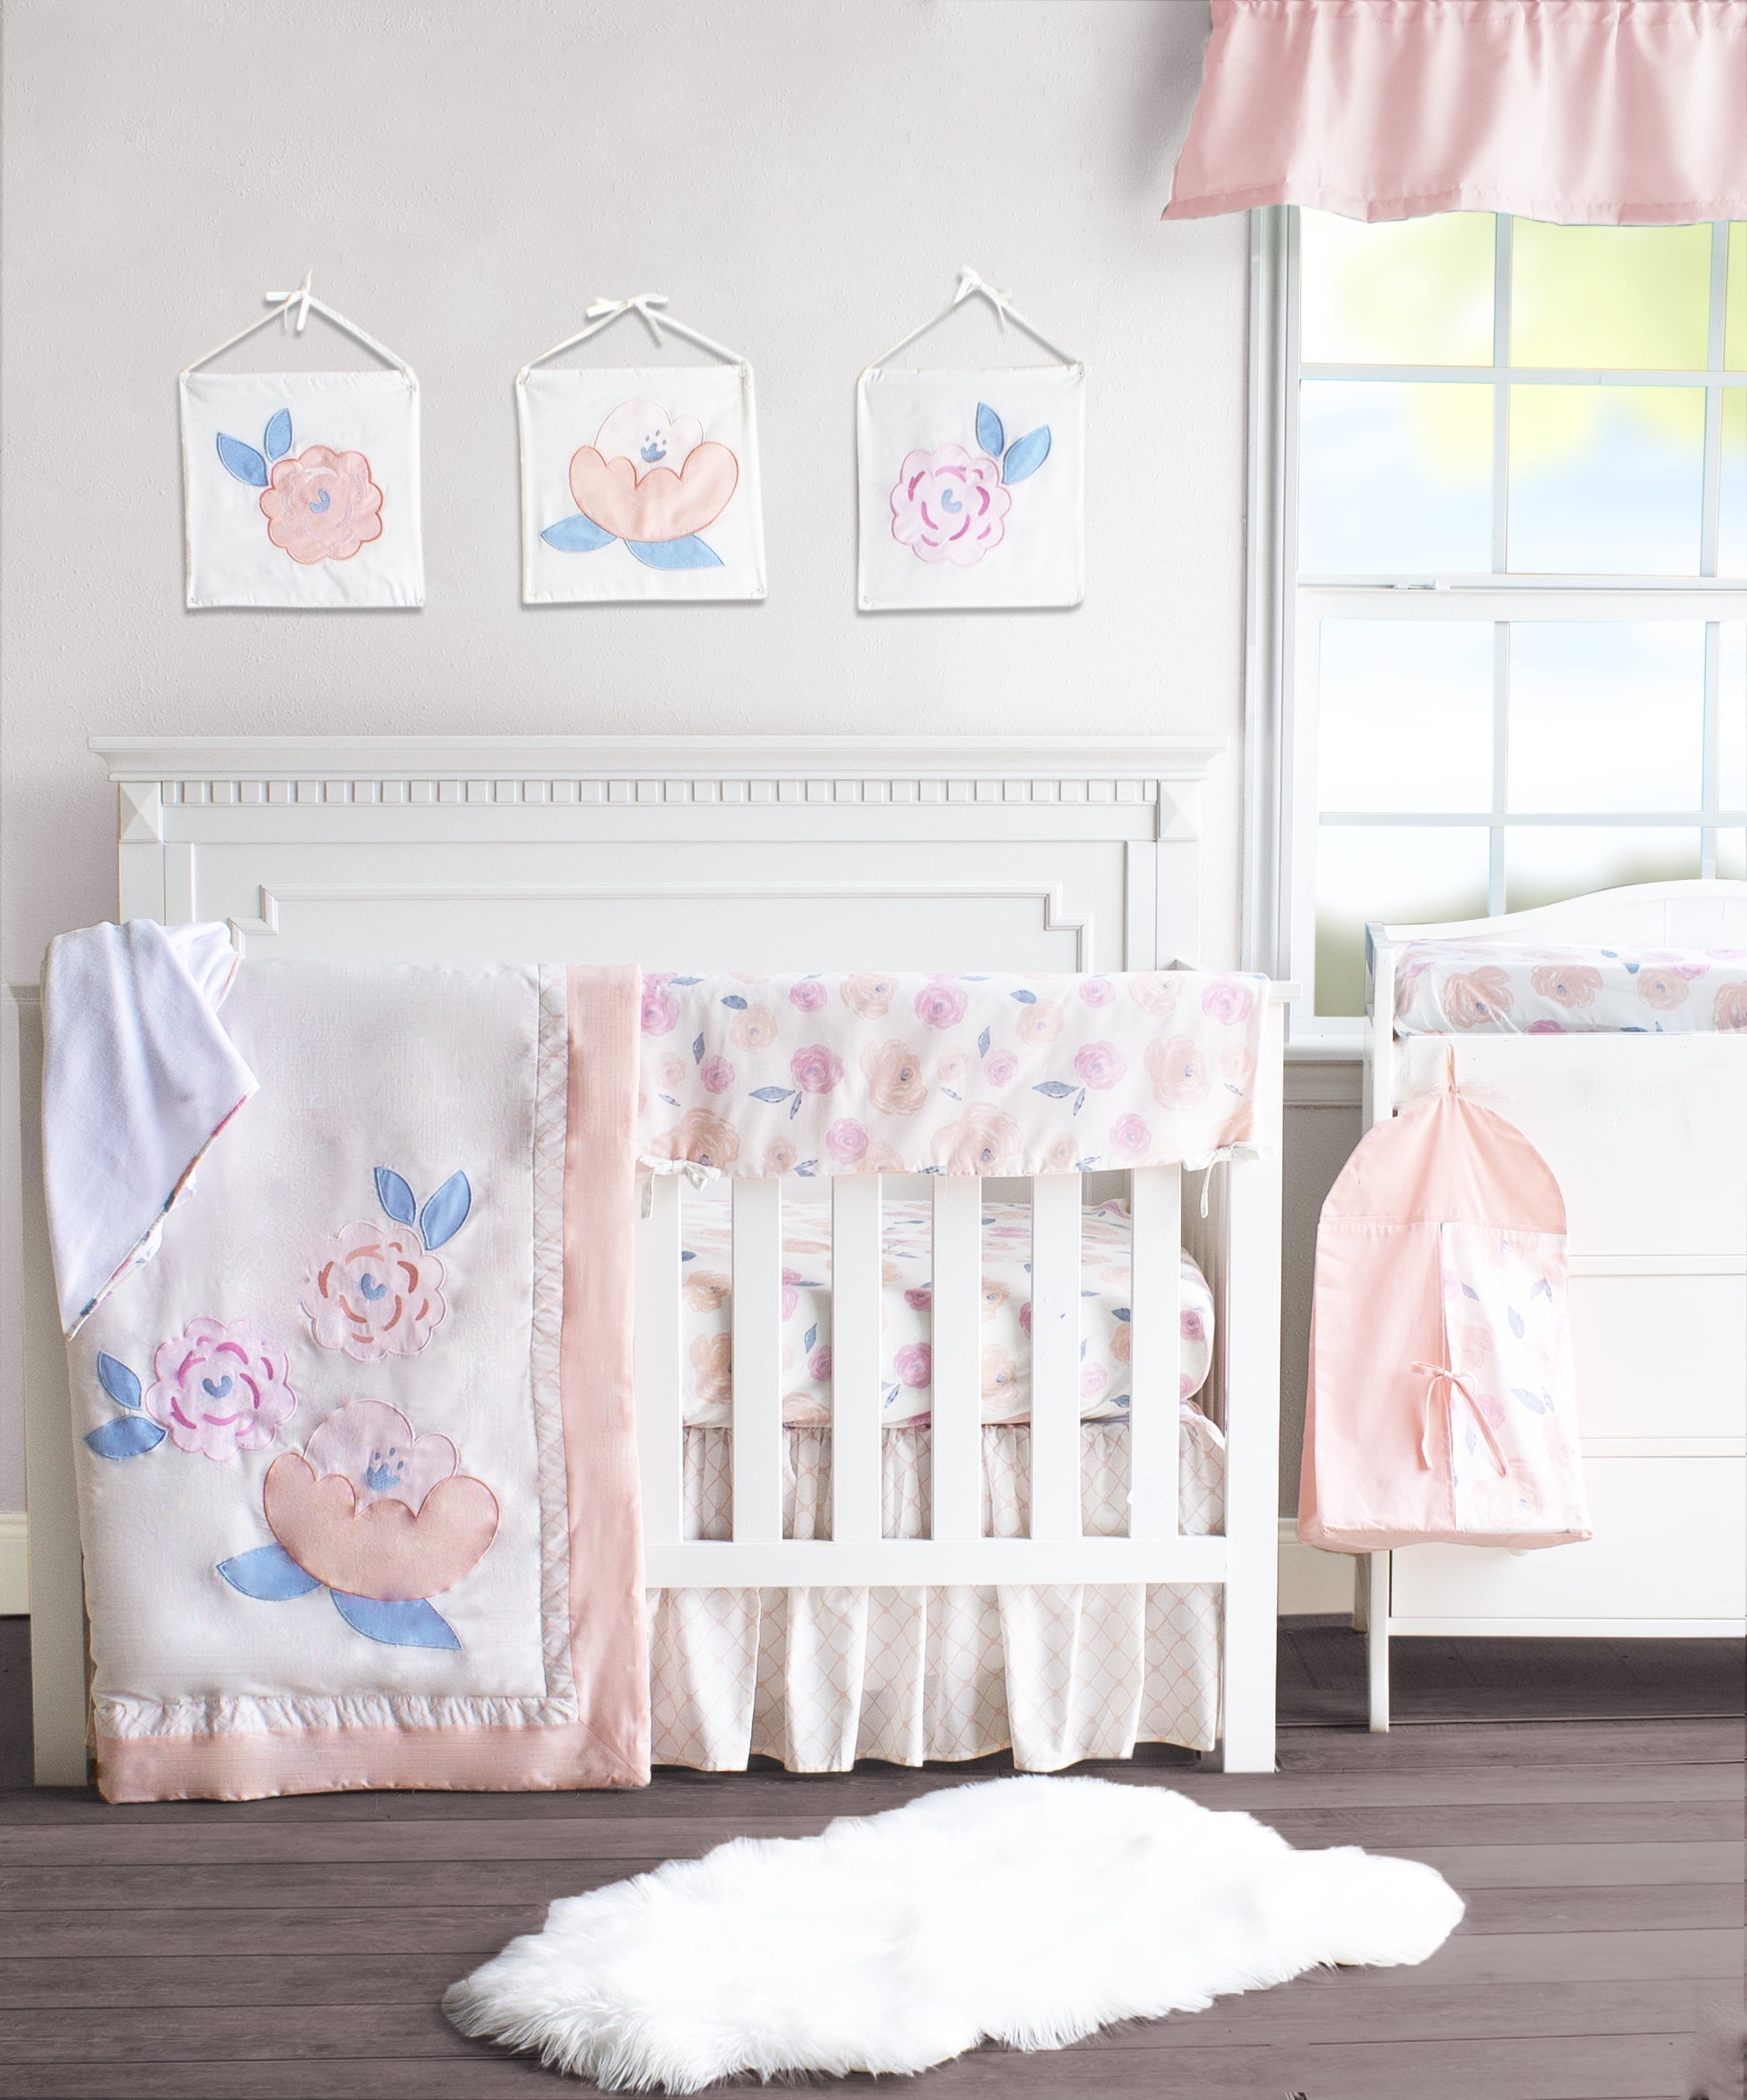 White Chenille Giraffe Minky Crib Nursery Bedding Set 13 pcs included Diaper Bag 